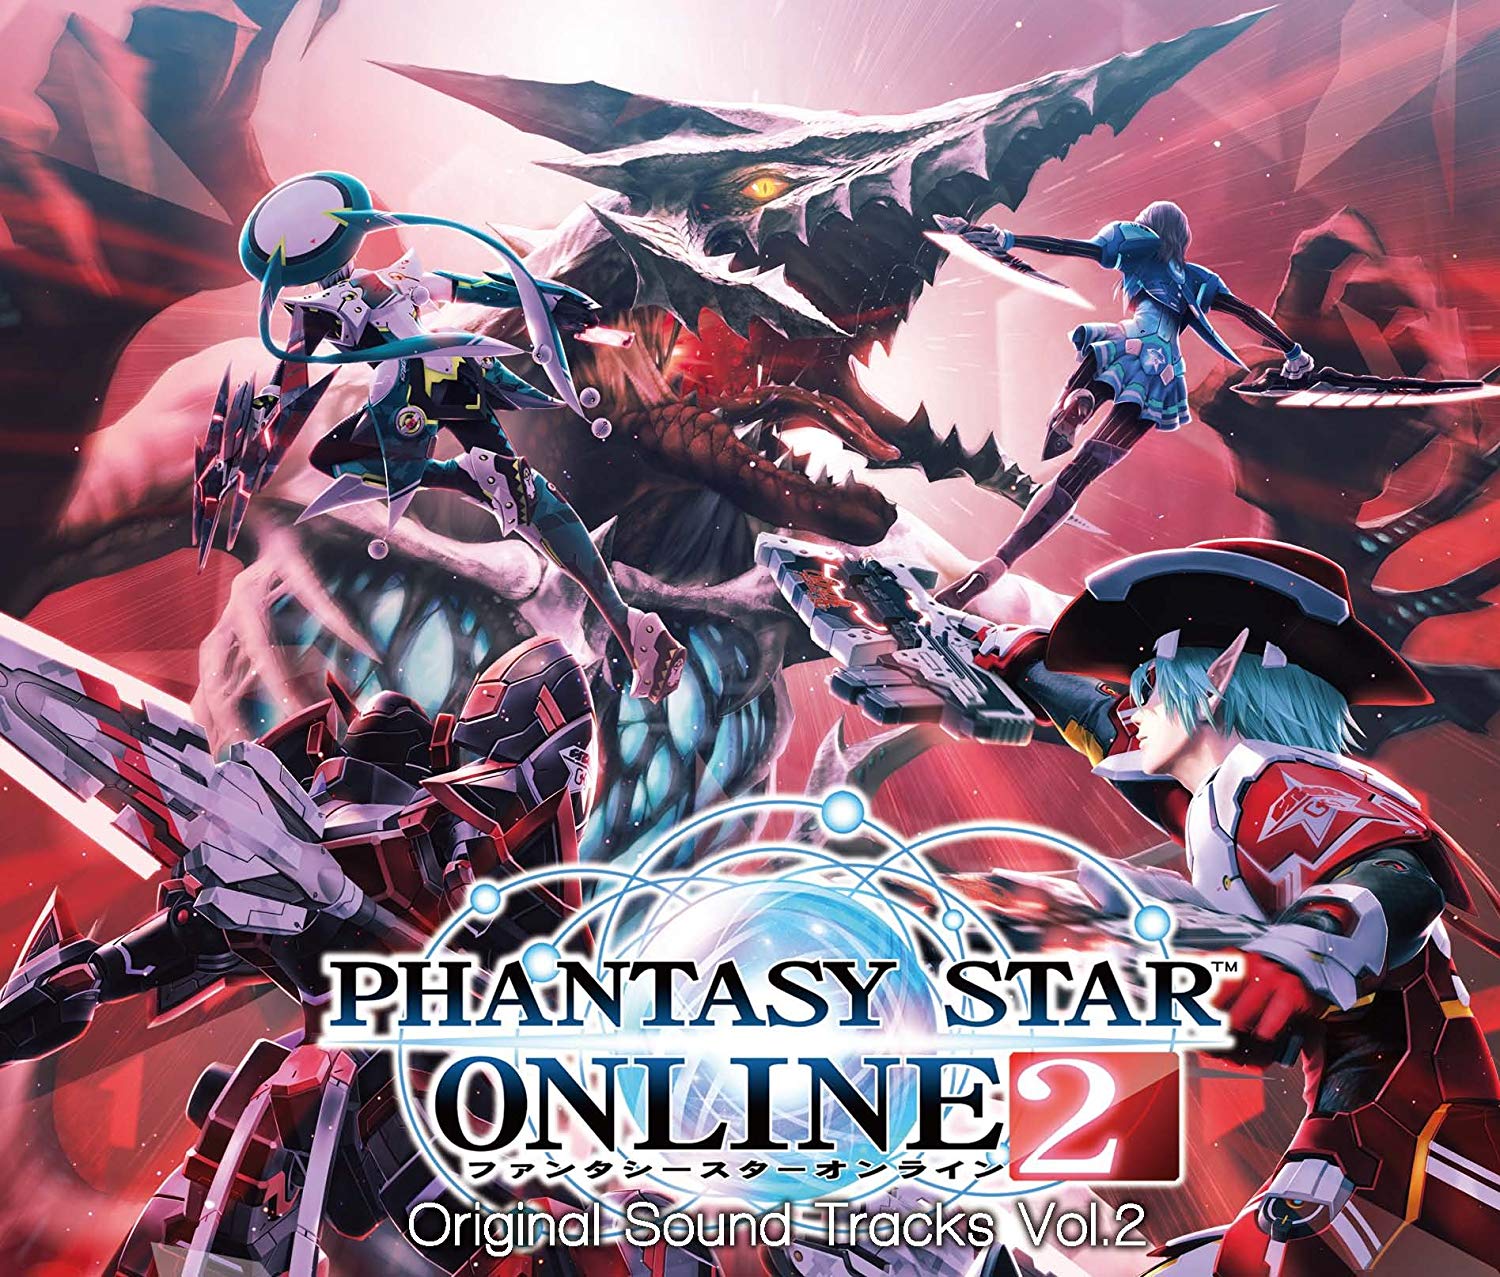 Audio Cd Phantasy Star Online 2 Original Soundtrack Vol.2 (4 Cd) NUOVO SIGILLATO, EDIZIONE DEL 27/11/2013 SUBITO DISPONIBILE